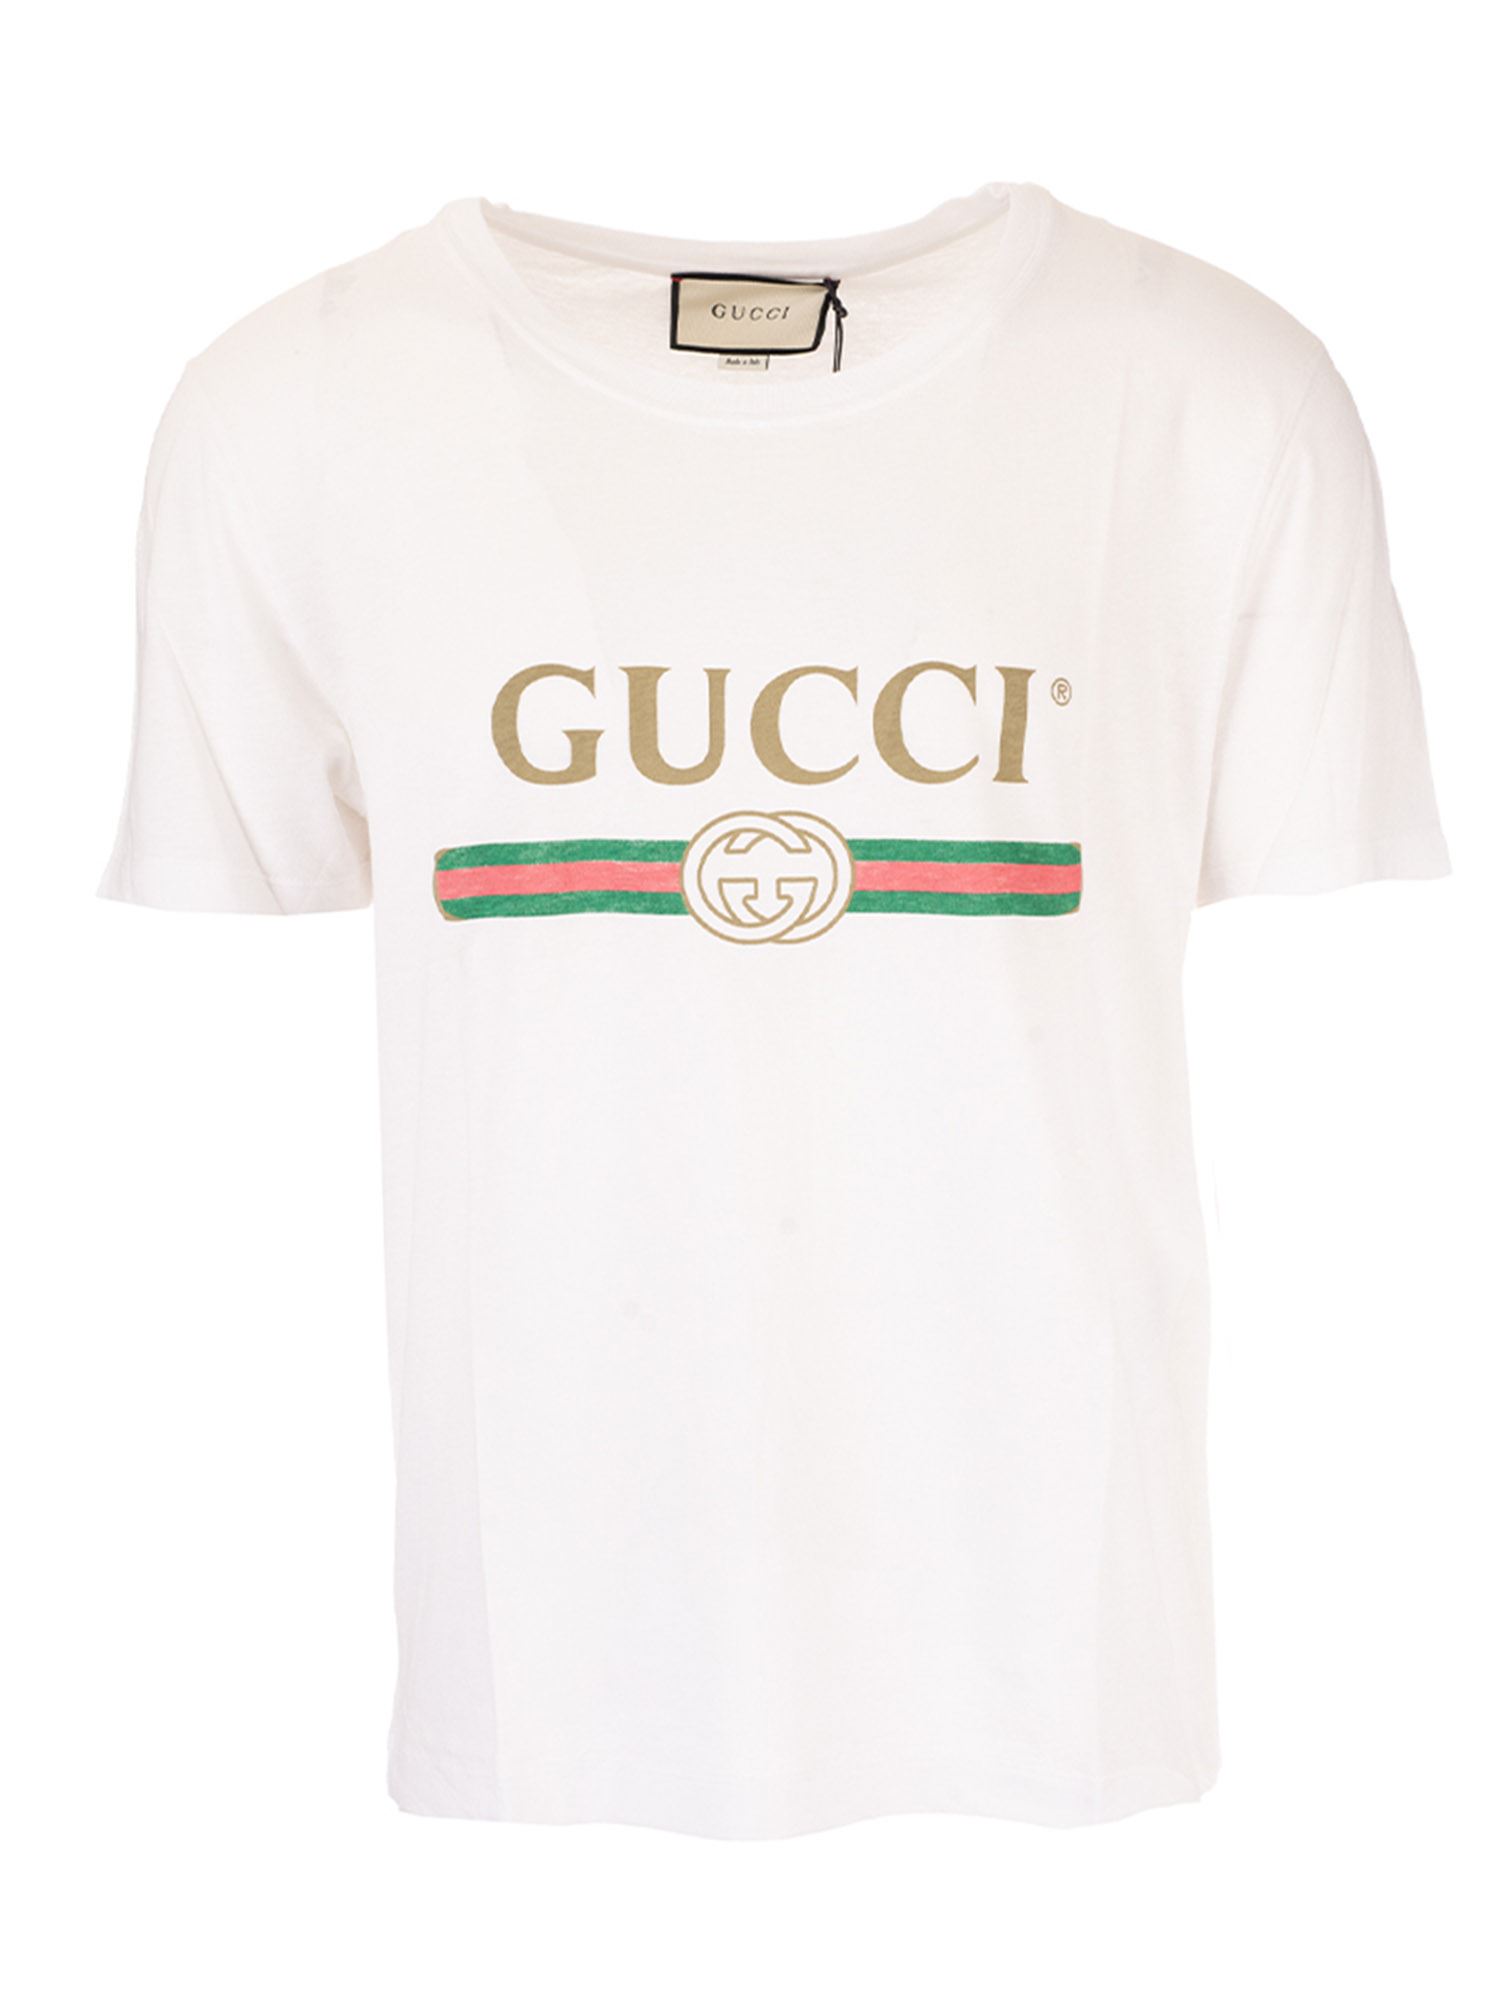 Gucci 专柜直采  女士白色洗棉质平纹针织面料饰有复古标志圆领短袖t恤 440103-x3f05-9045 In White